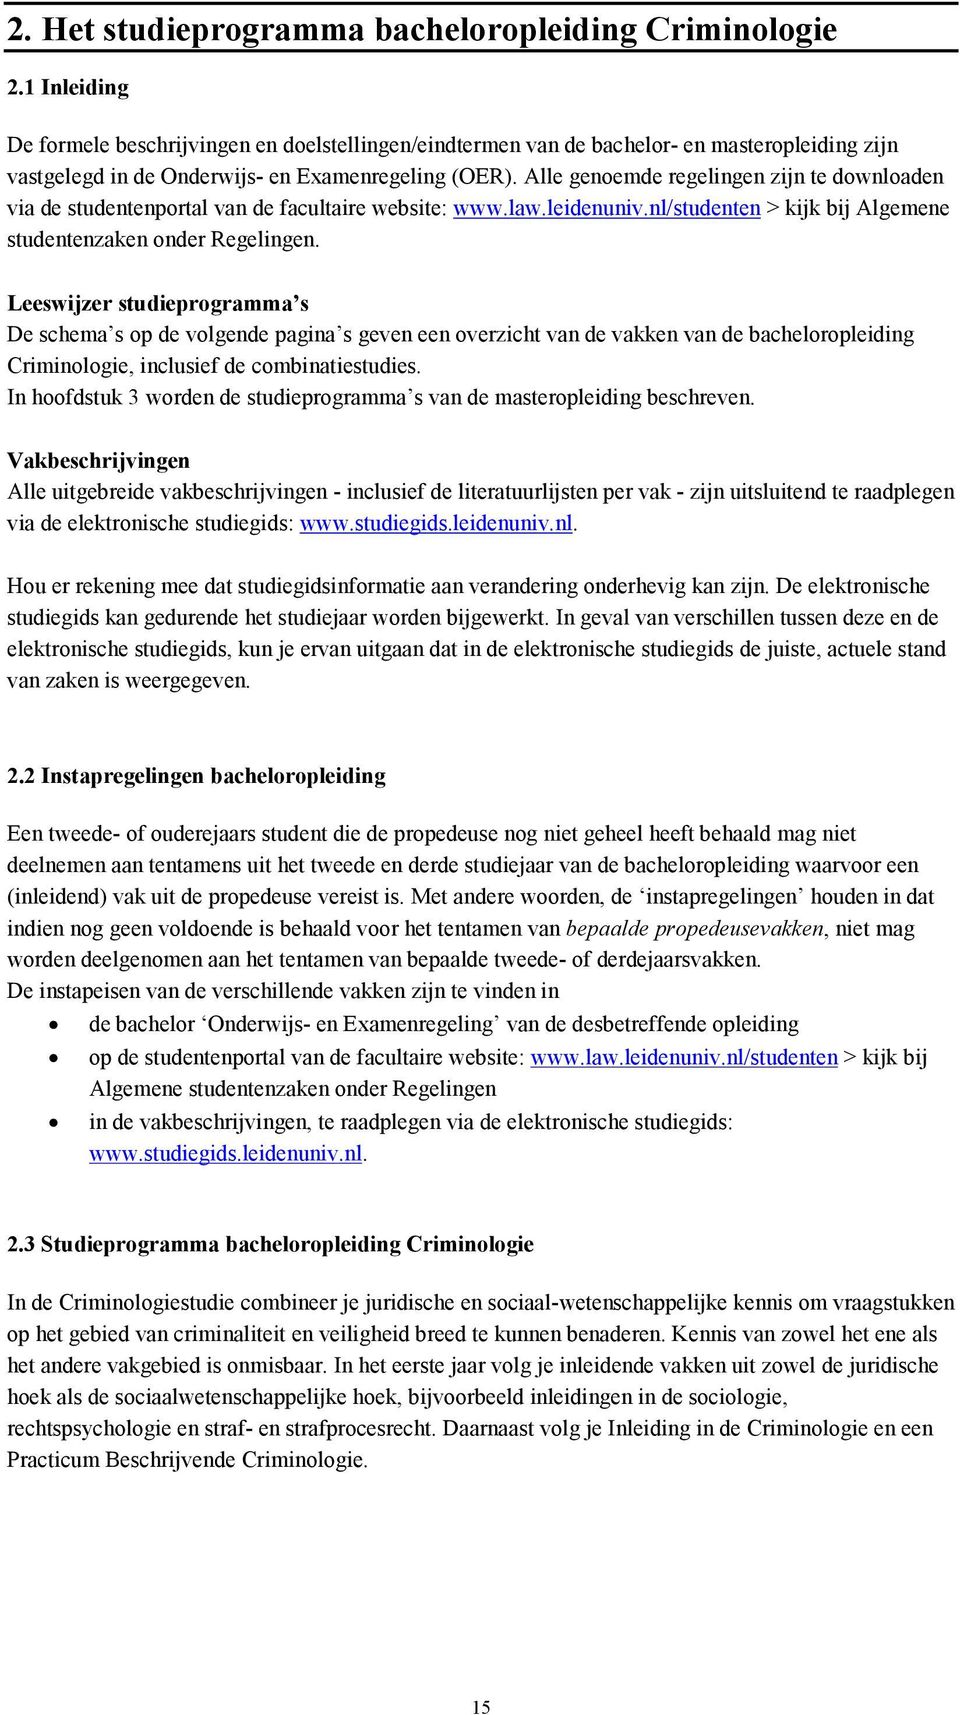 Alle genoemde regelingen zijn te downloaden via de studentenportal van de facultaire website: www.law.leidenuniv.nl/studenten > kijk bij Algemene studentenzaken onder Regelingen.